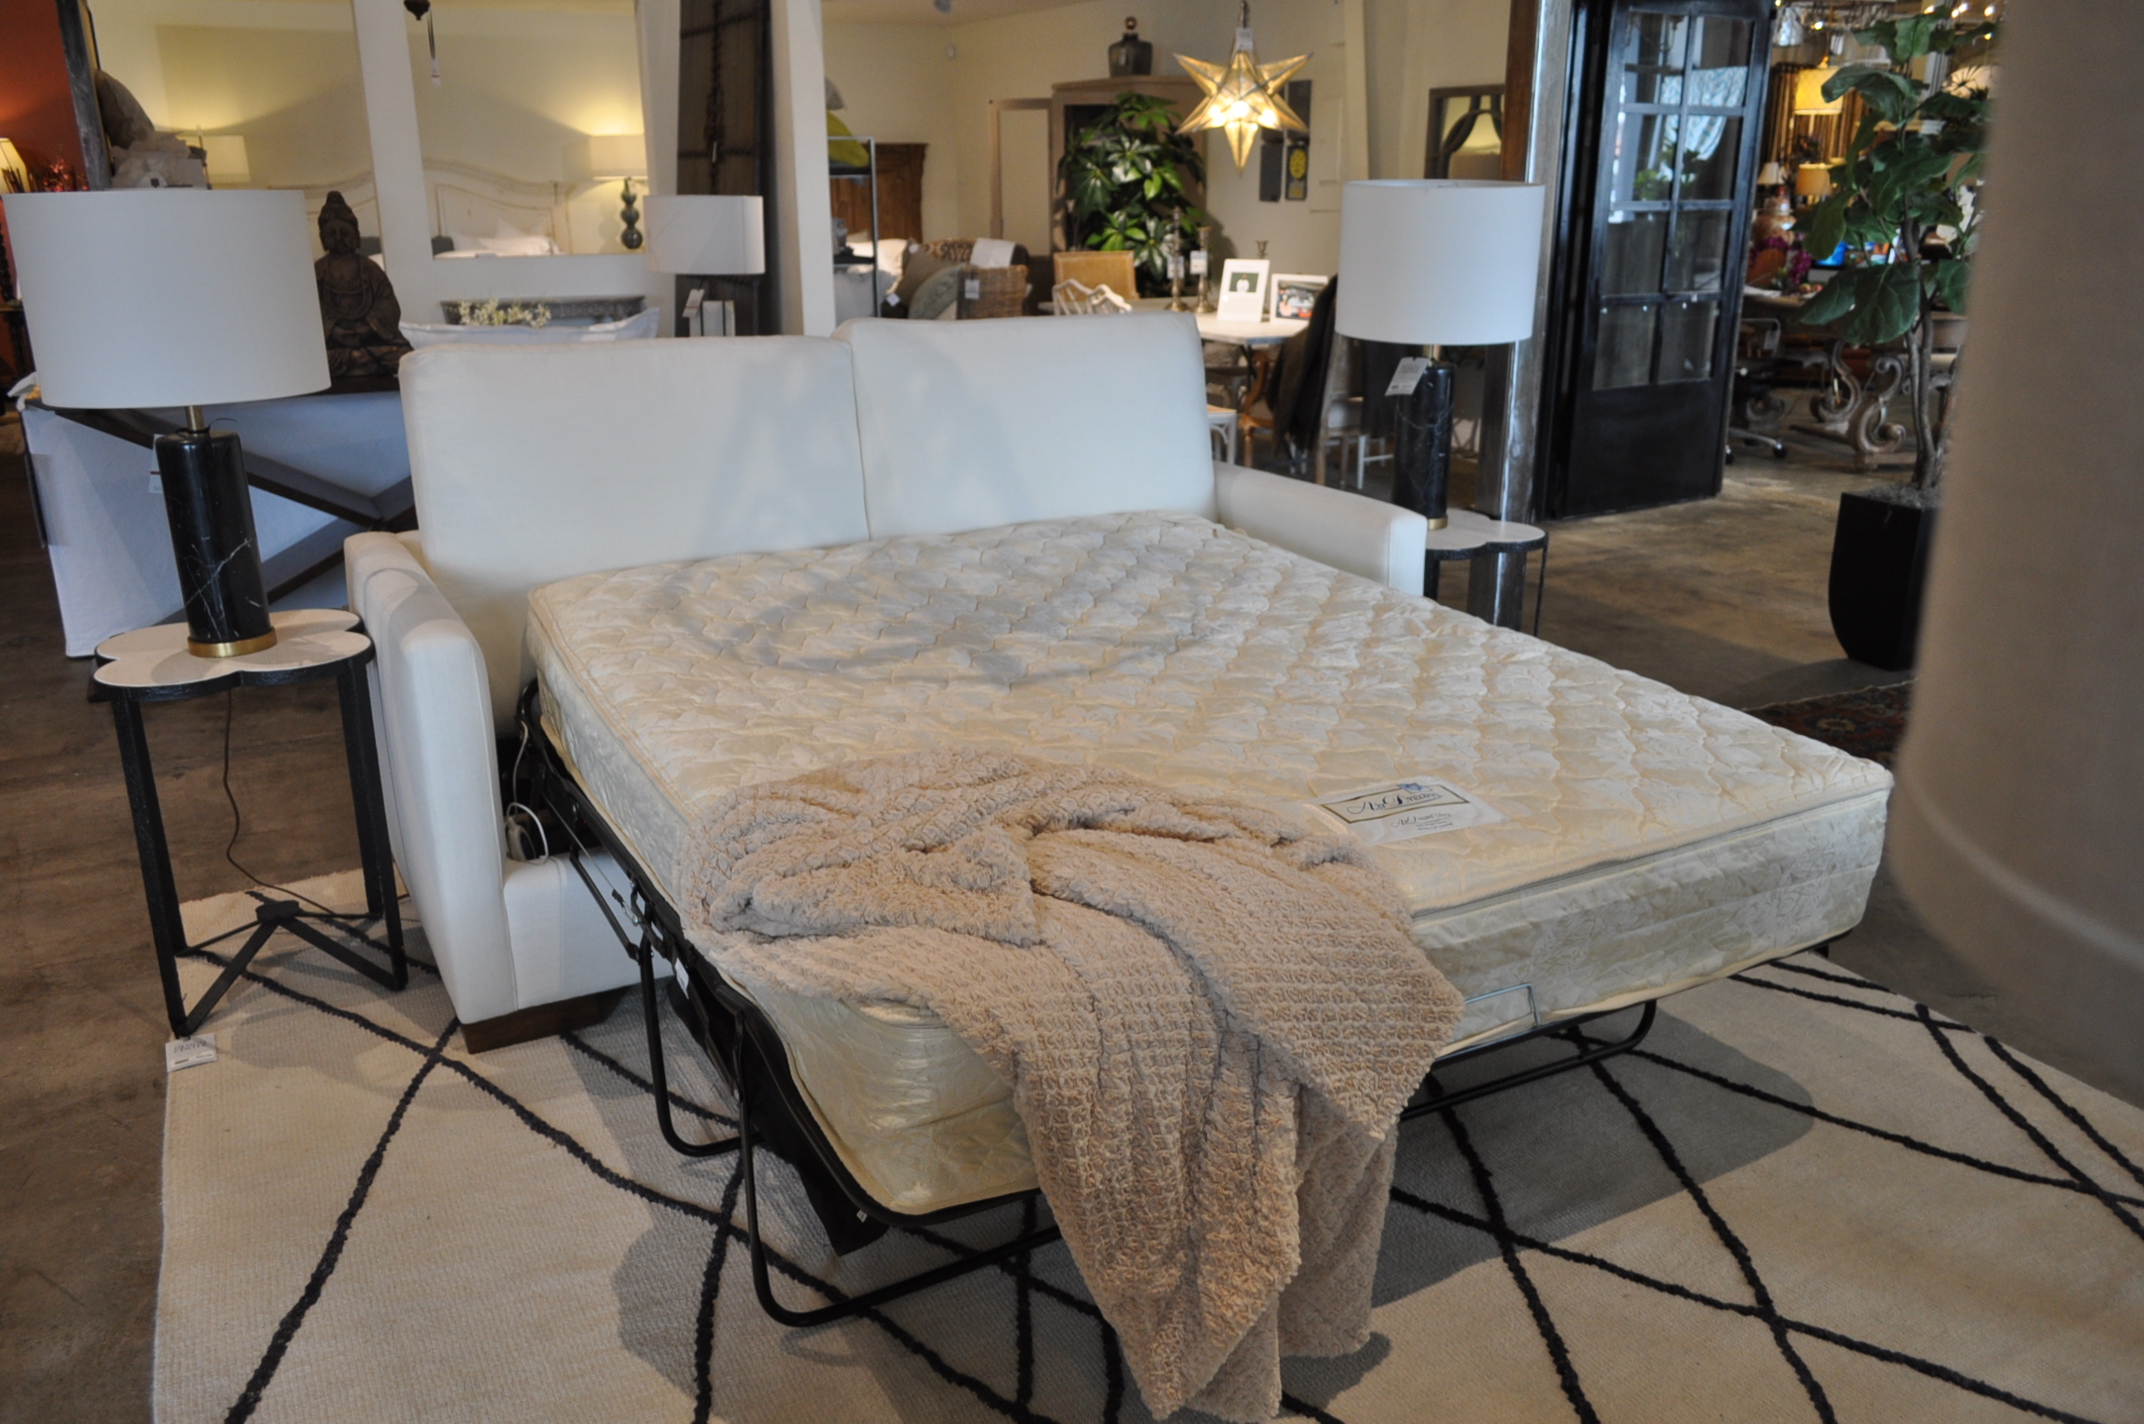 Electric Air mattress sleeper sofas